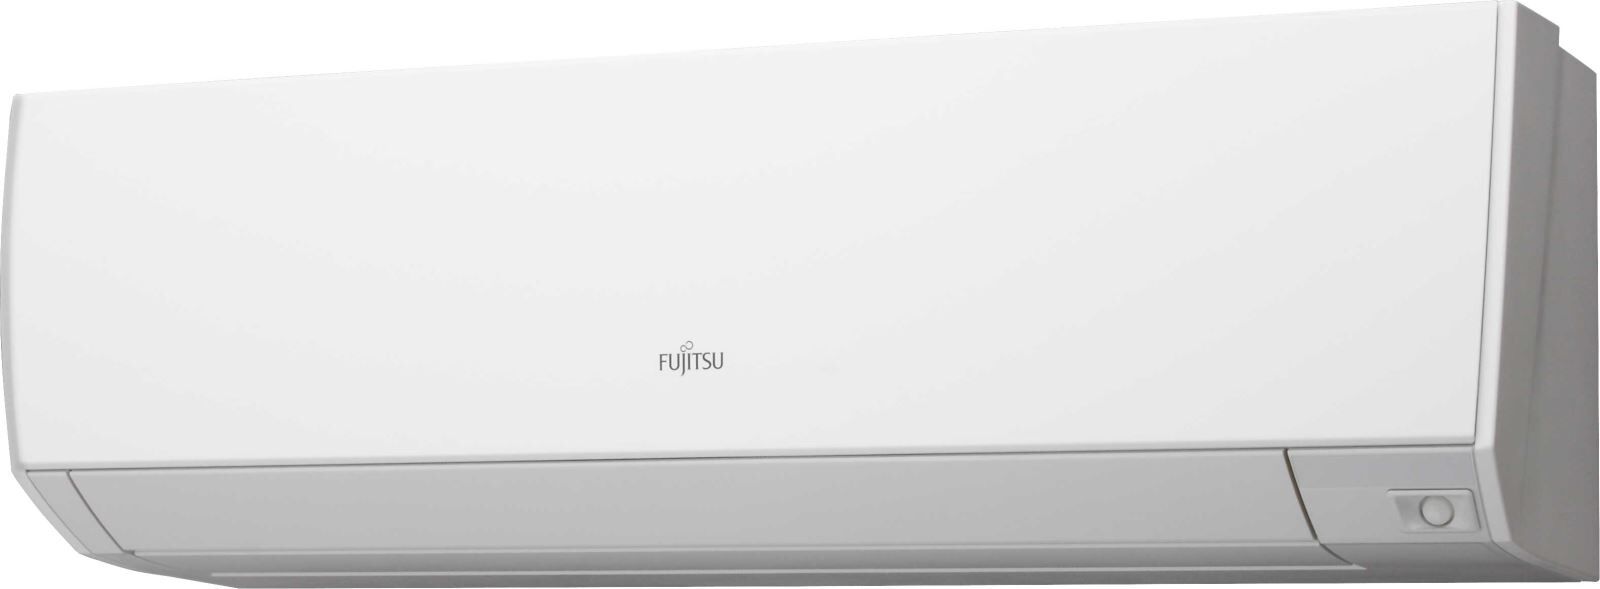 Кондиционер сплит-система Fujitsu ASYG09KHCA/AOYG09KHCAN цена 0.00 грн - фотография 2